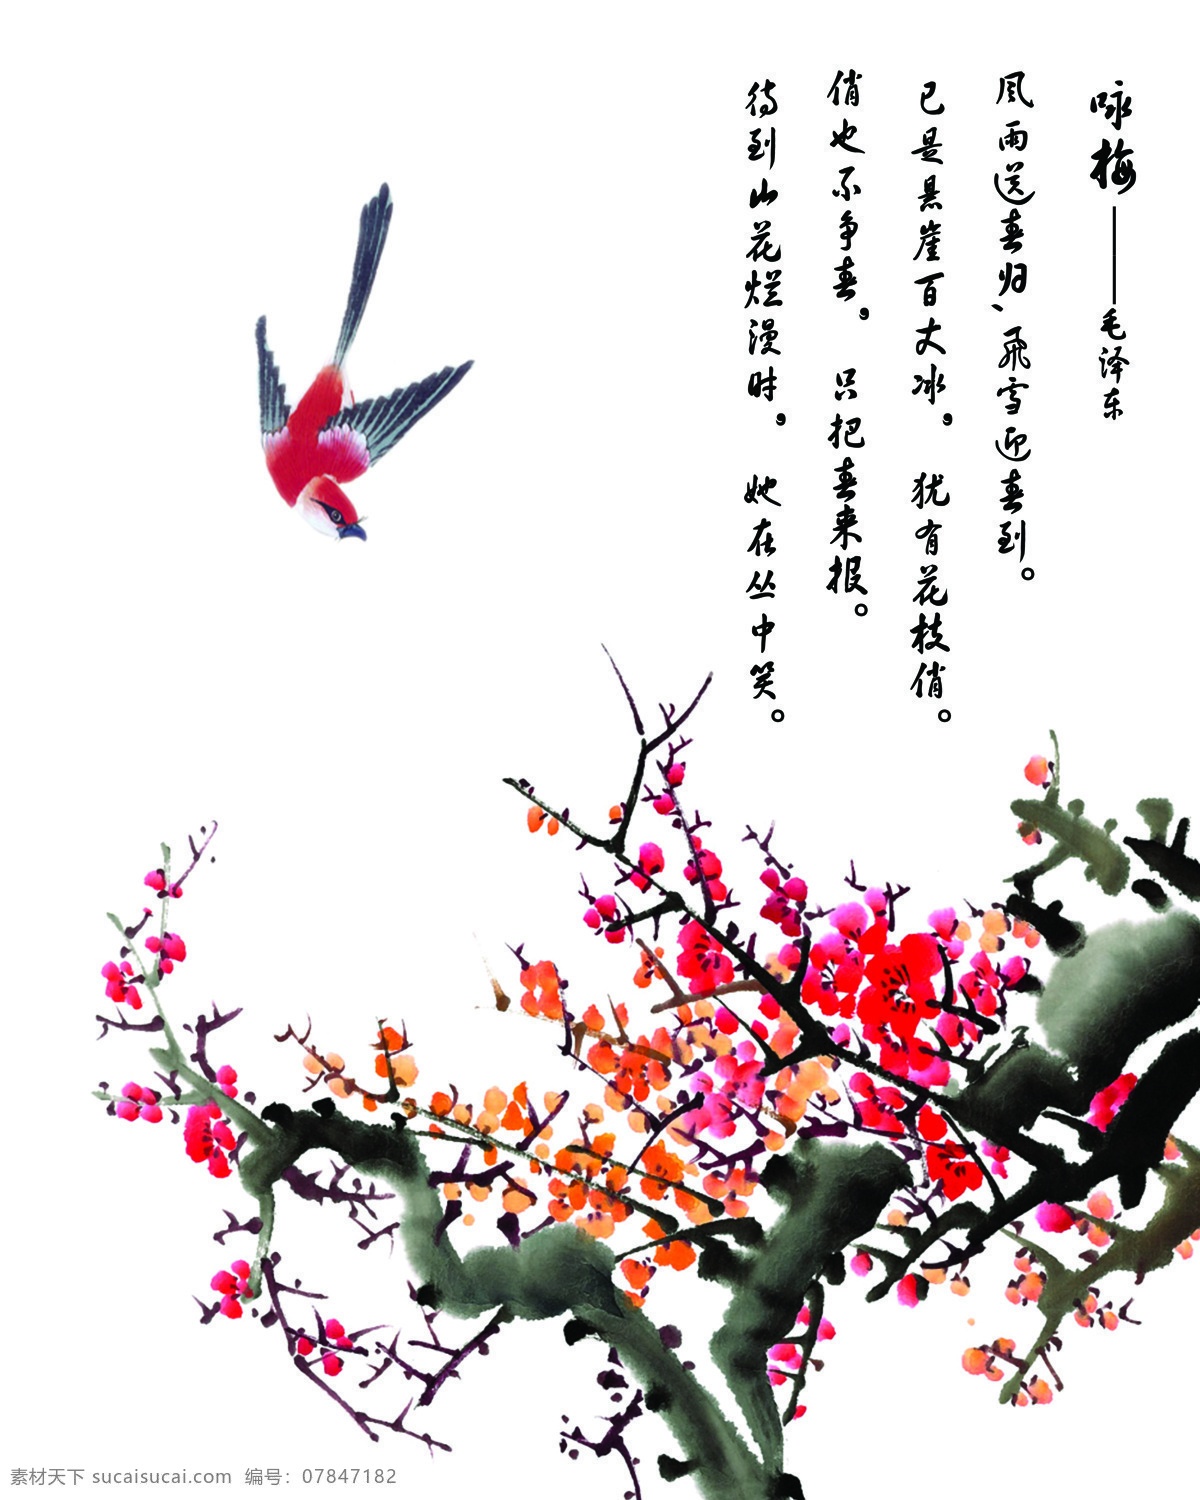 中式 手绘 梅花 独自 开 大全 3d渲染 效果图 电视背景墙 燕子 瓷砖 挂画 水墨画